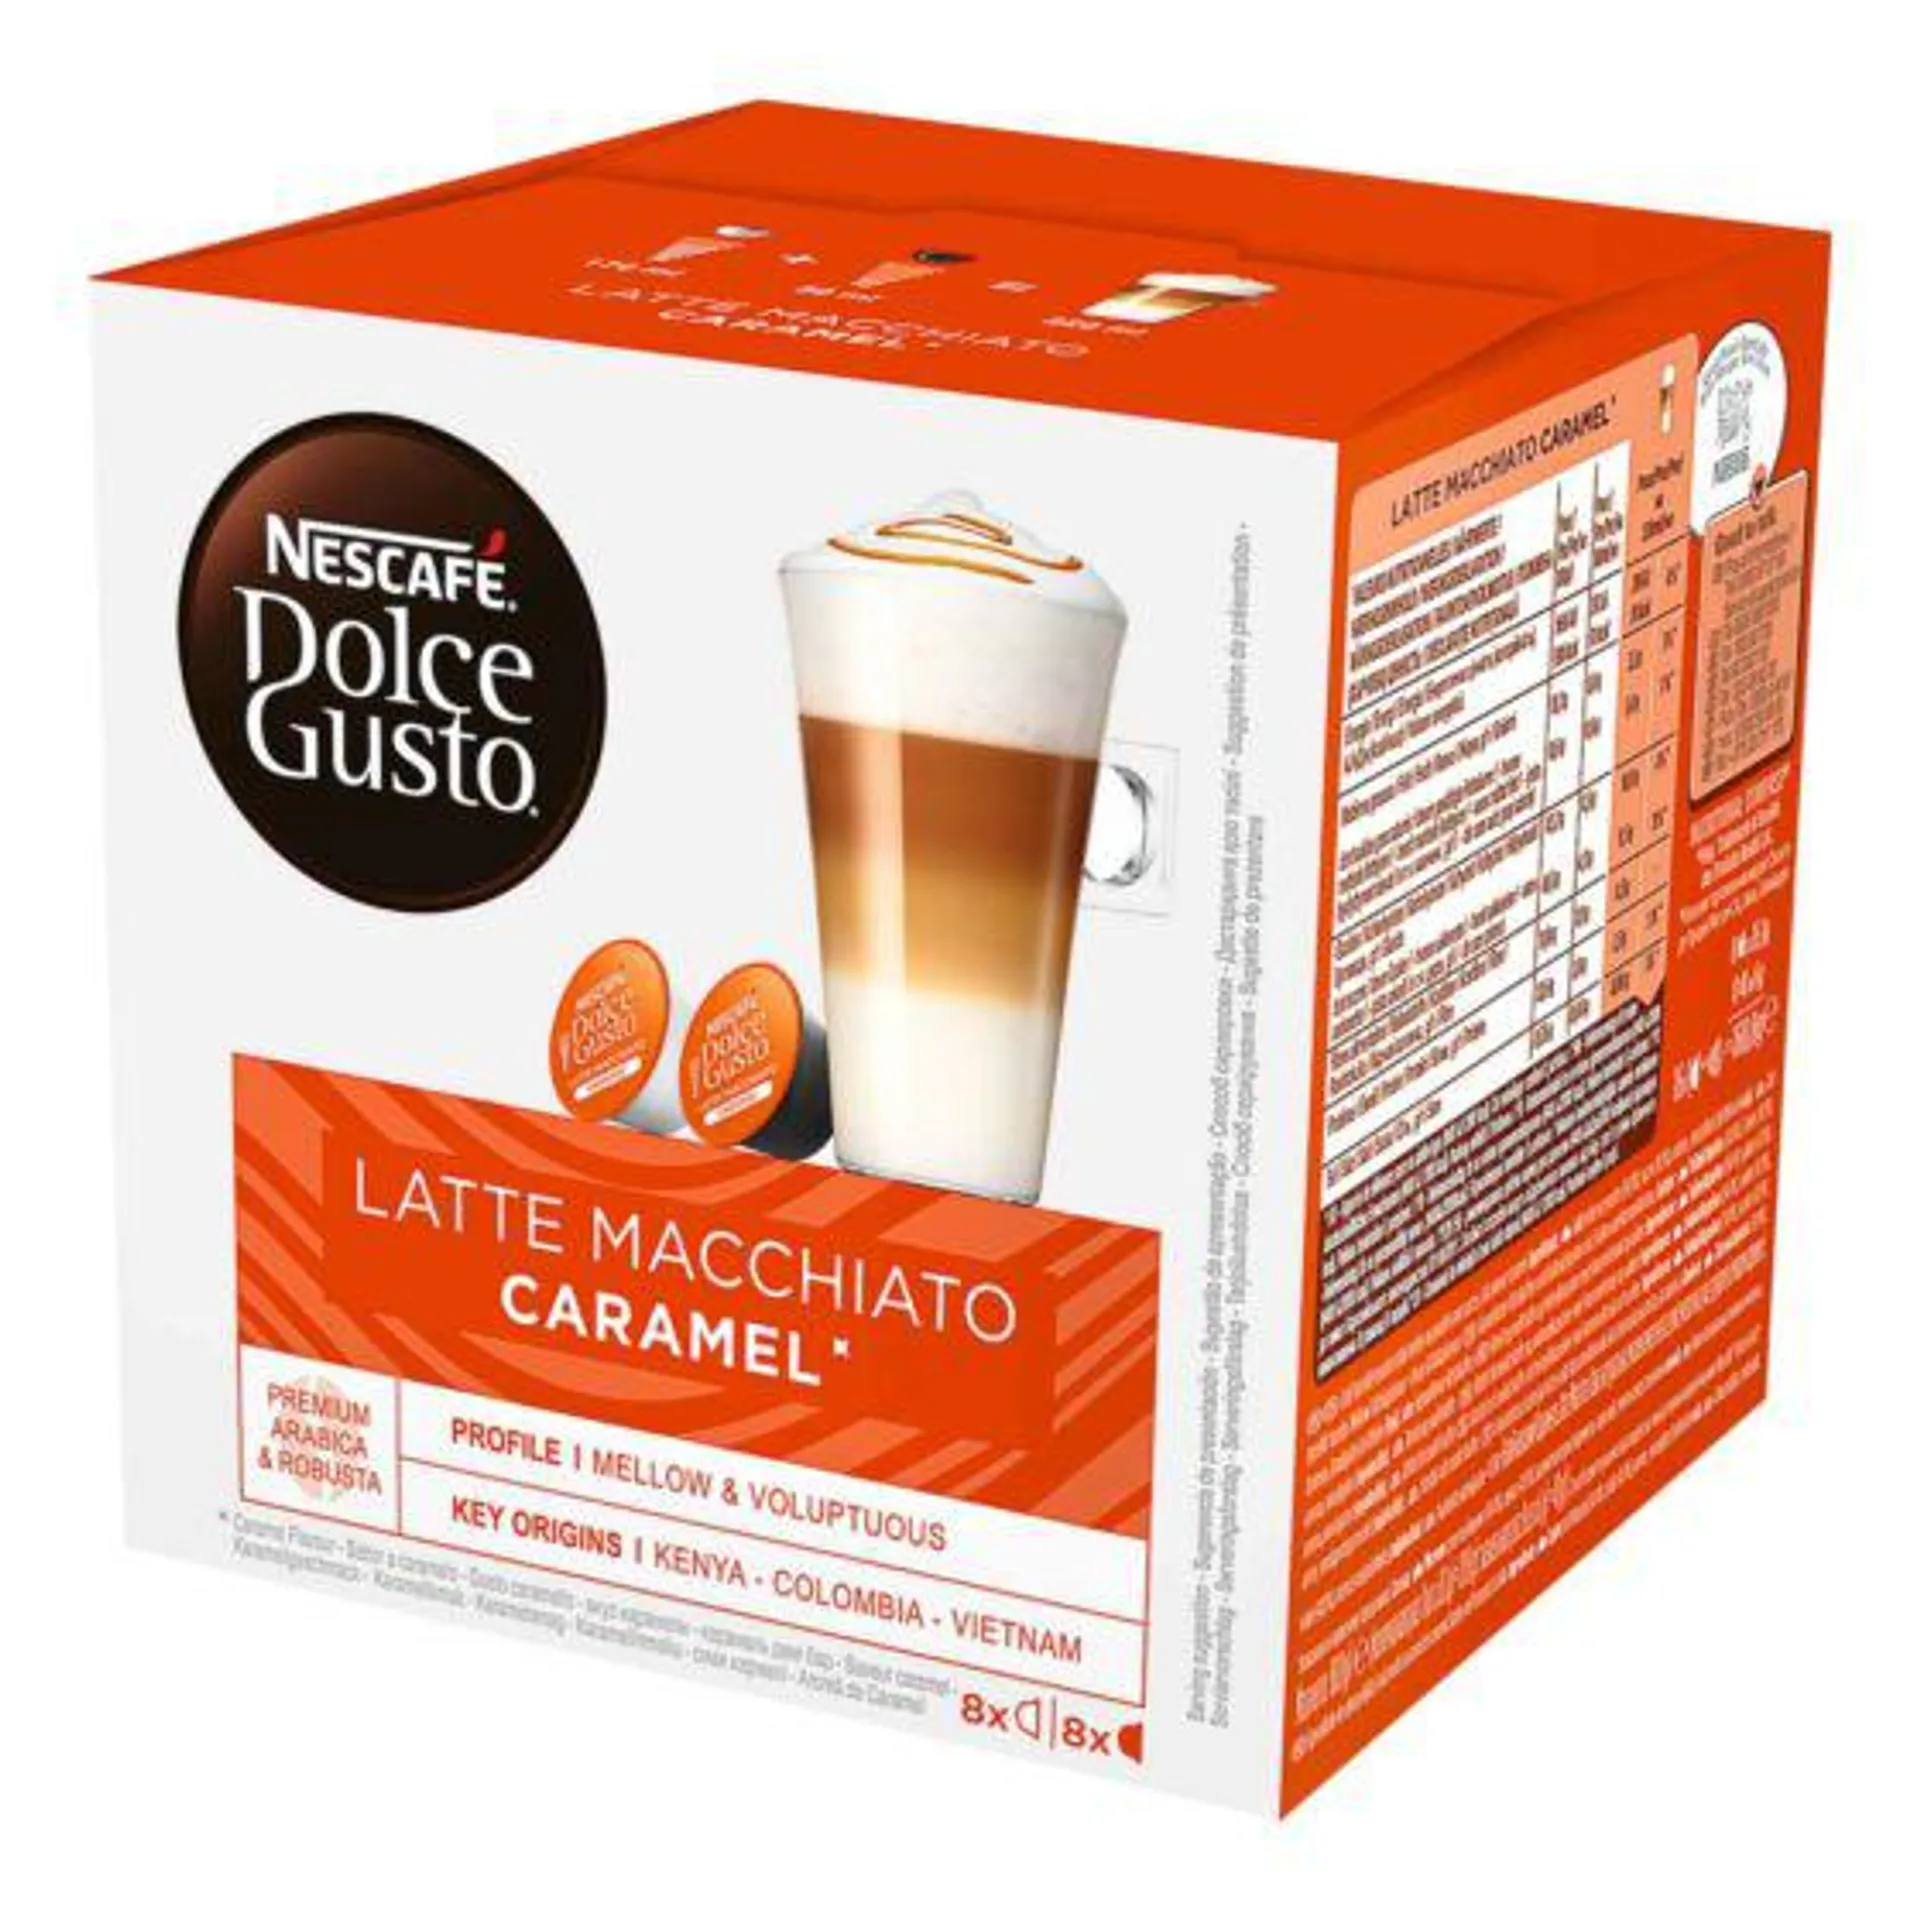 Nescafé Dolce Gusto Latte Macchiato Caramel 16 Kapseln